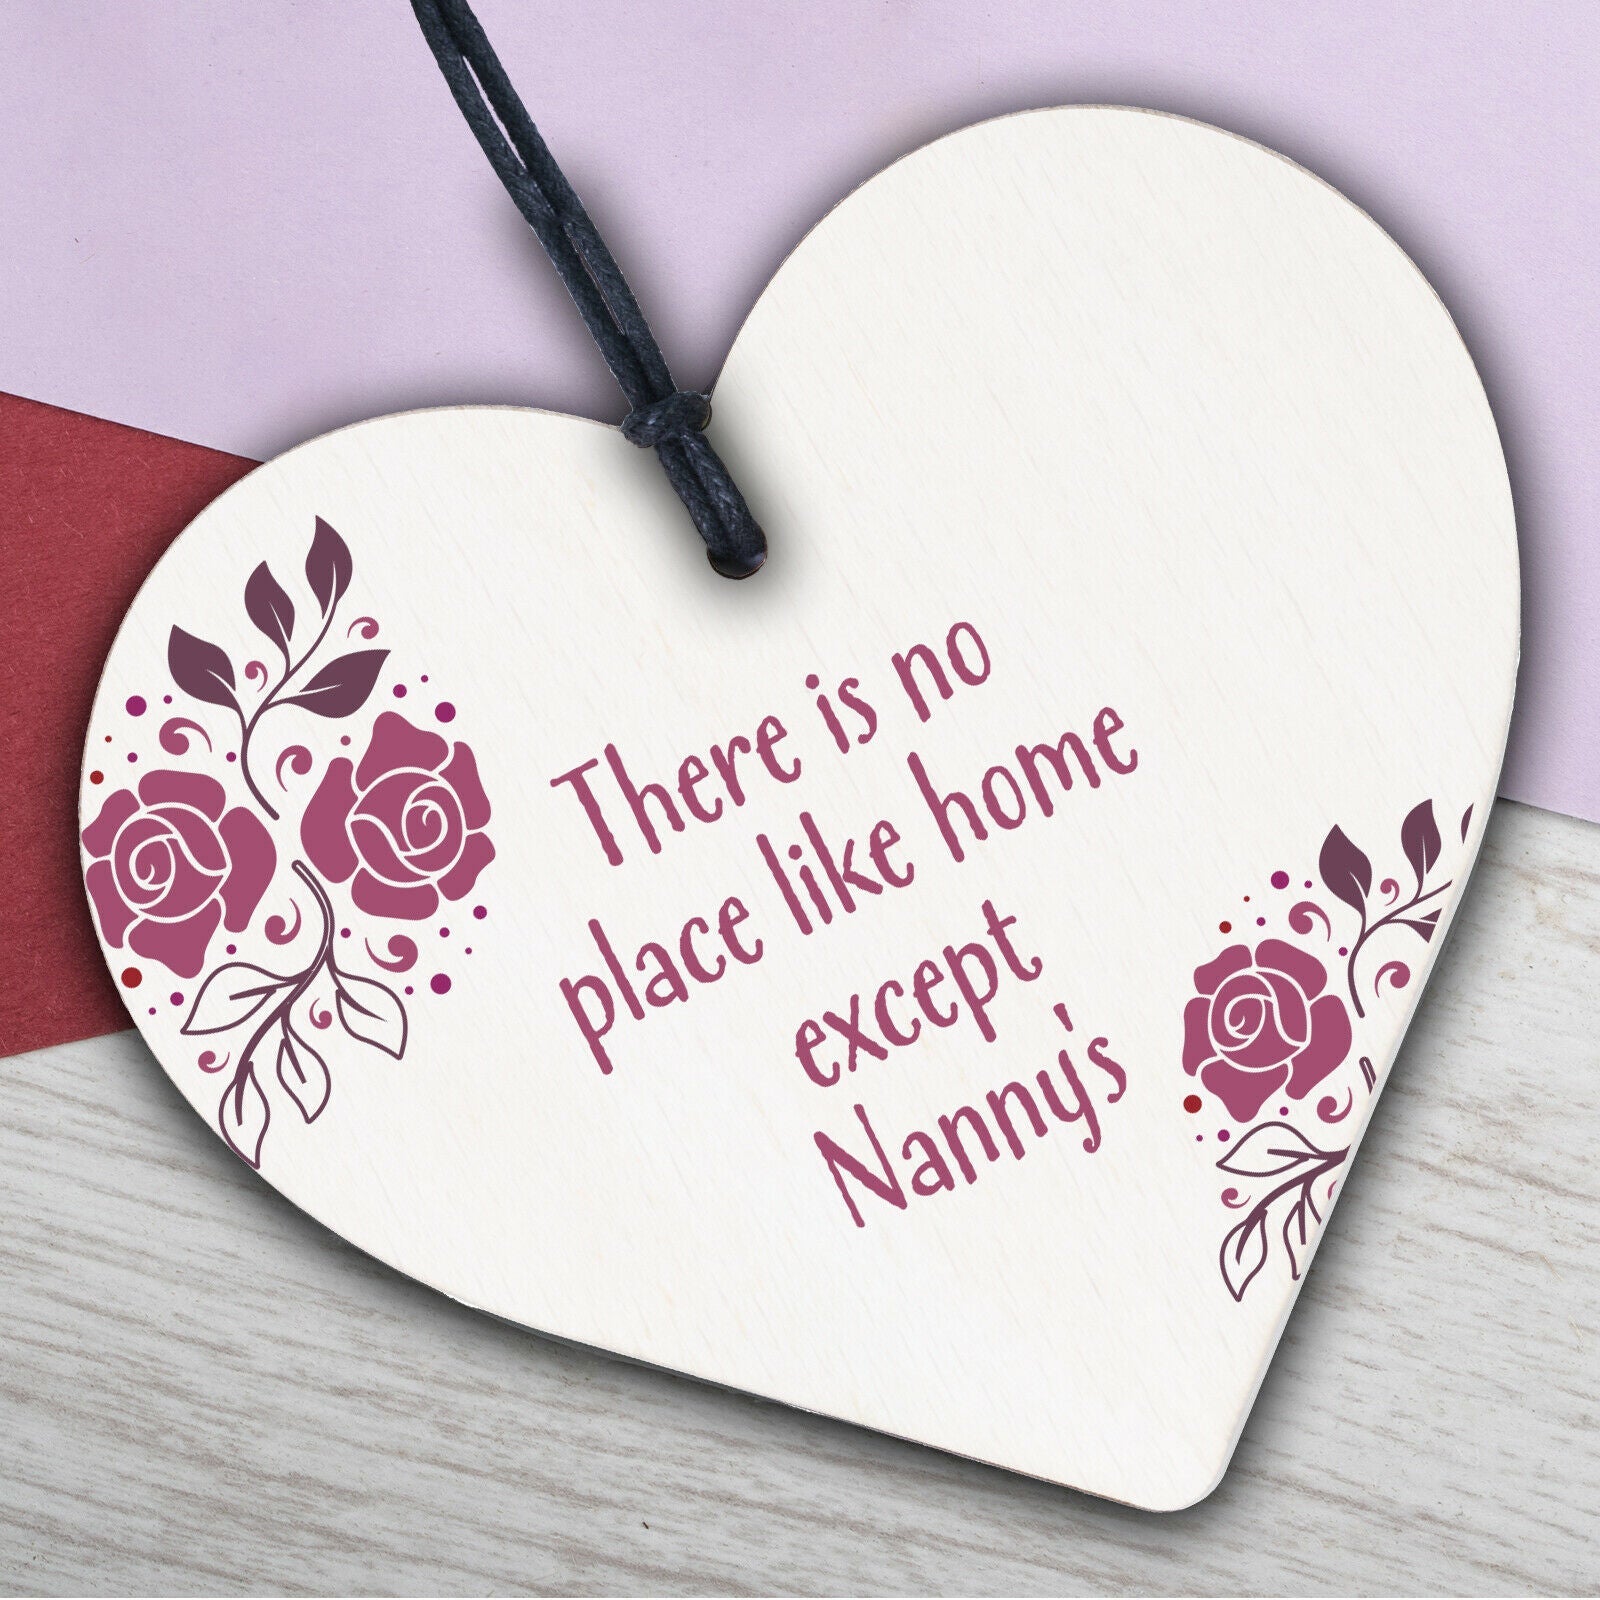 Nanny Nan Christmas Birthday Gifts Hanging Wooden Heart Sign Xmas Home Keepsake